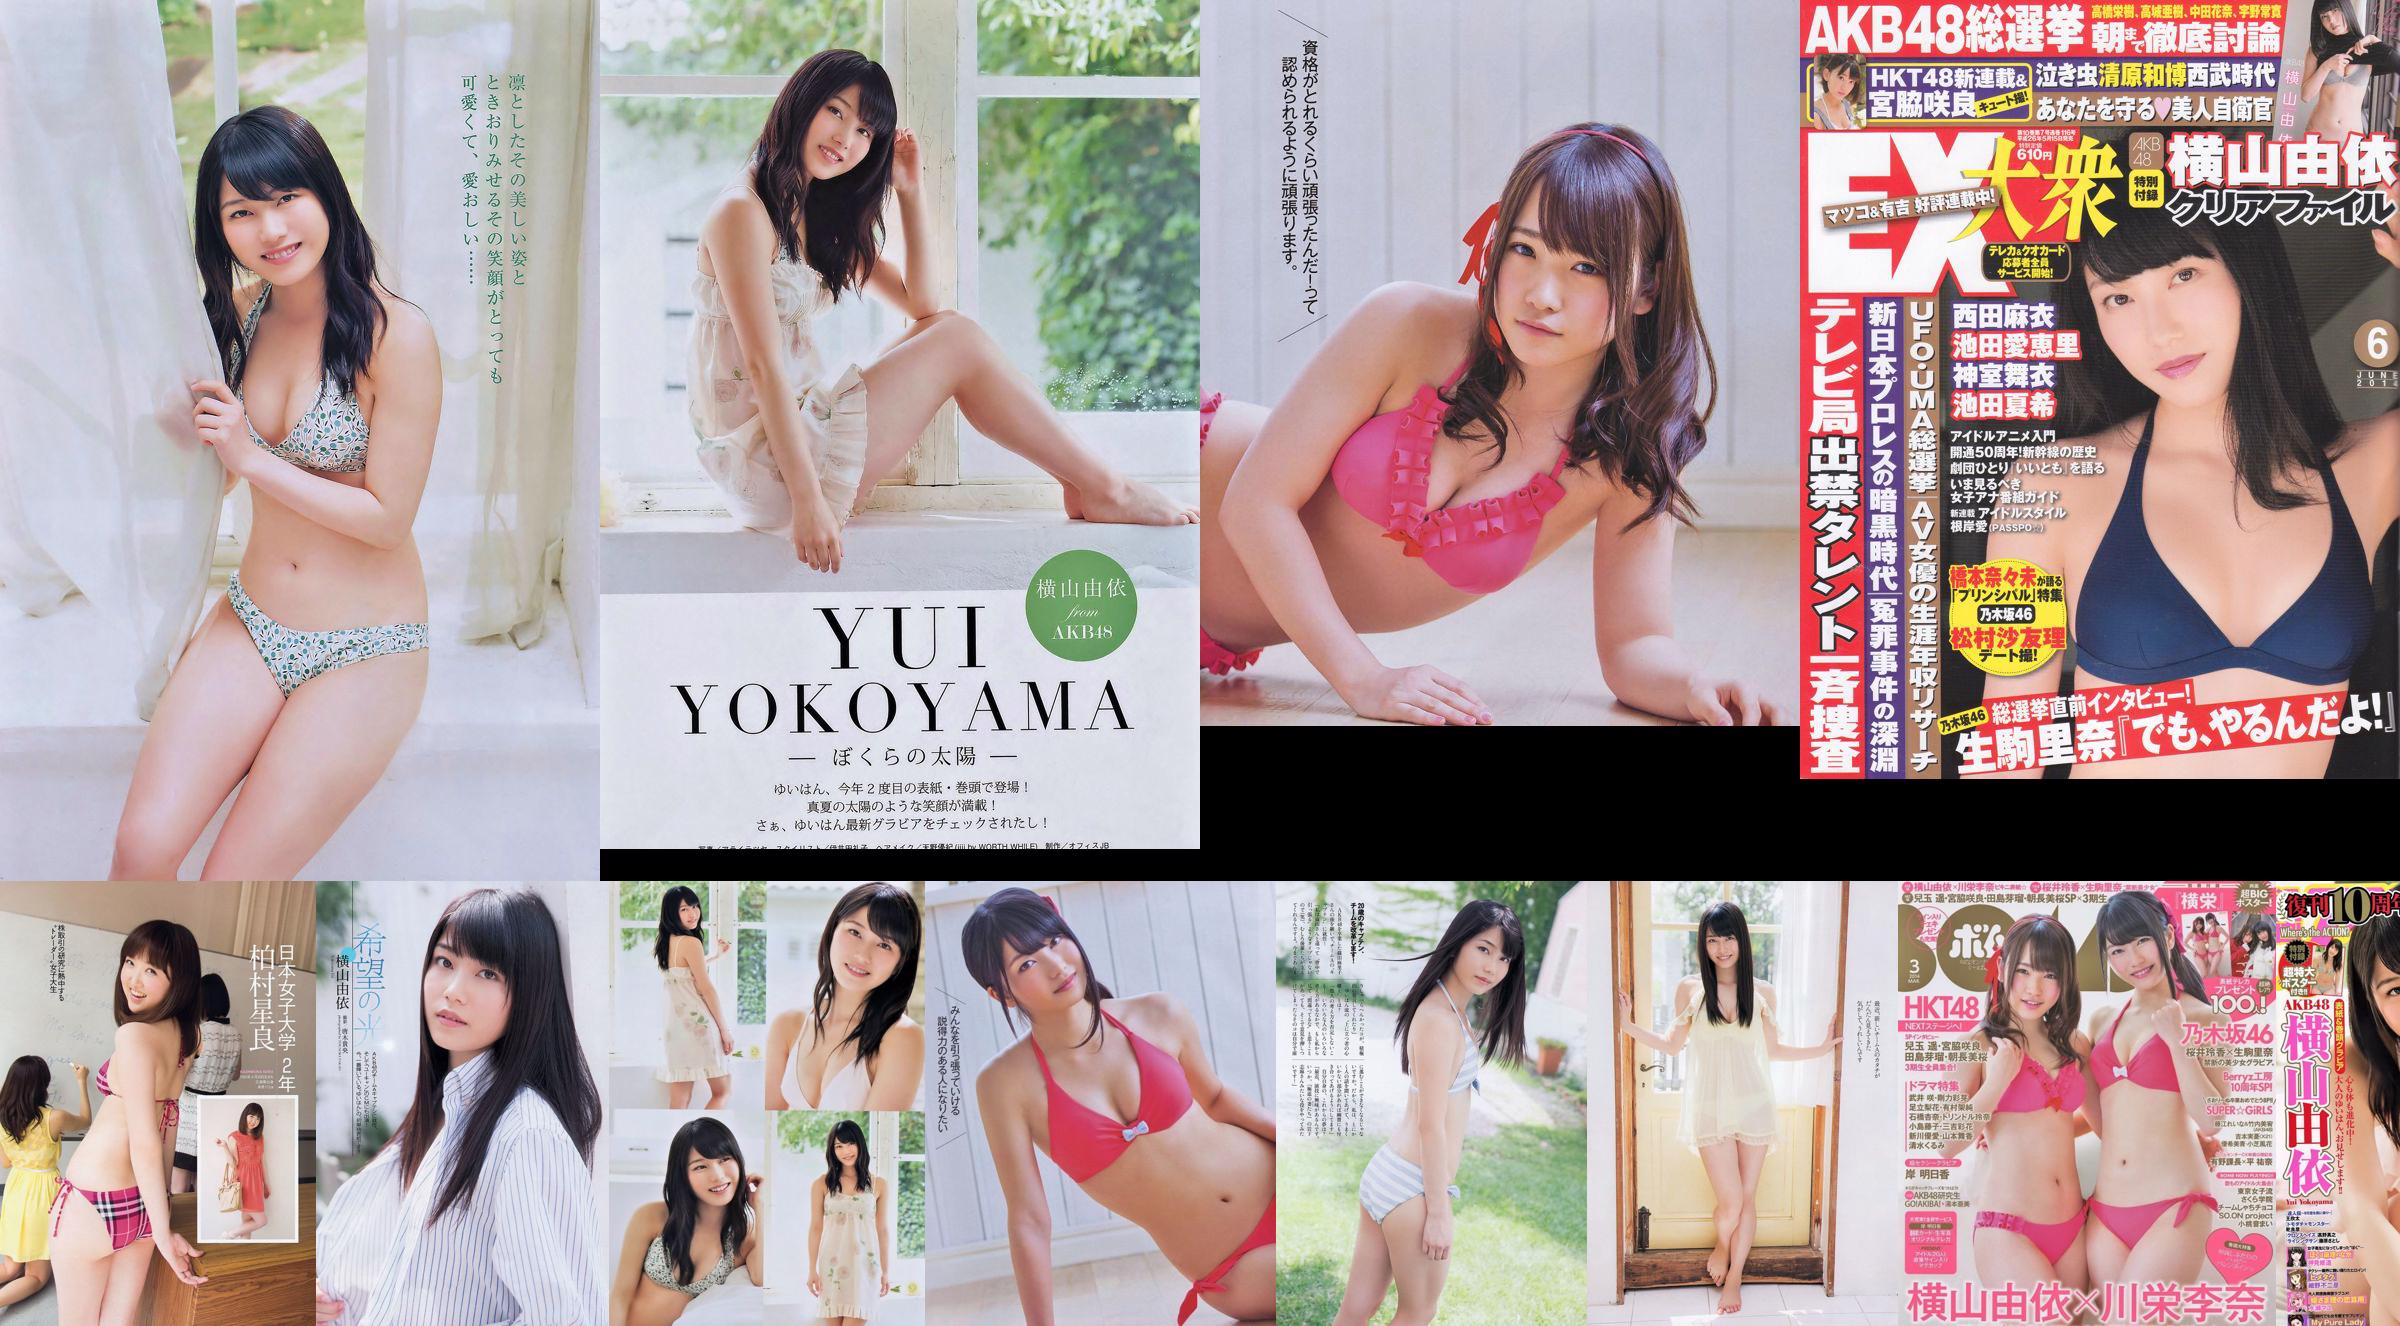 [Manga-actie] Yui Yokoyama 2014 nr. 16 foto: No.5a3534 Pagina 1